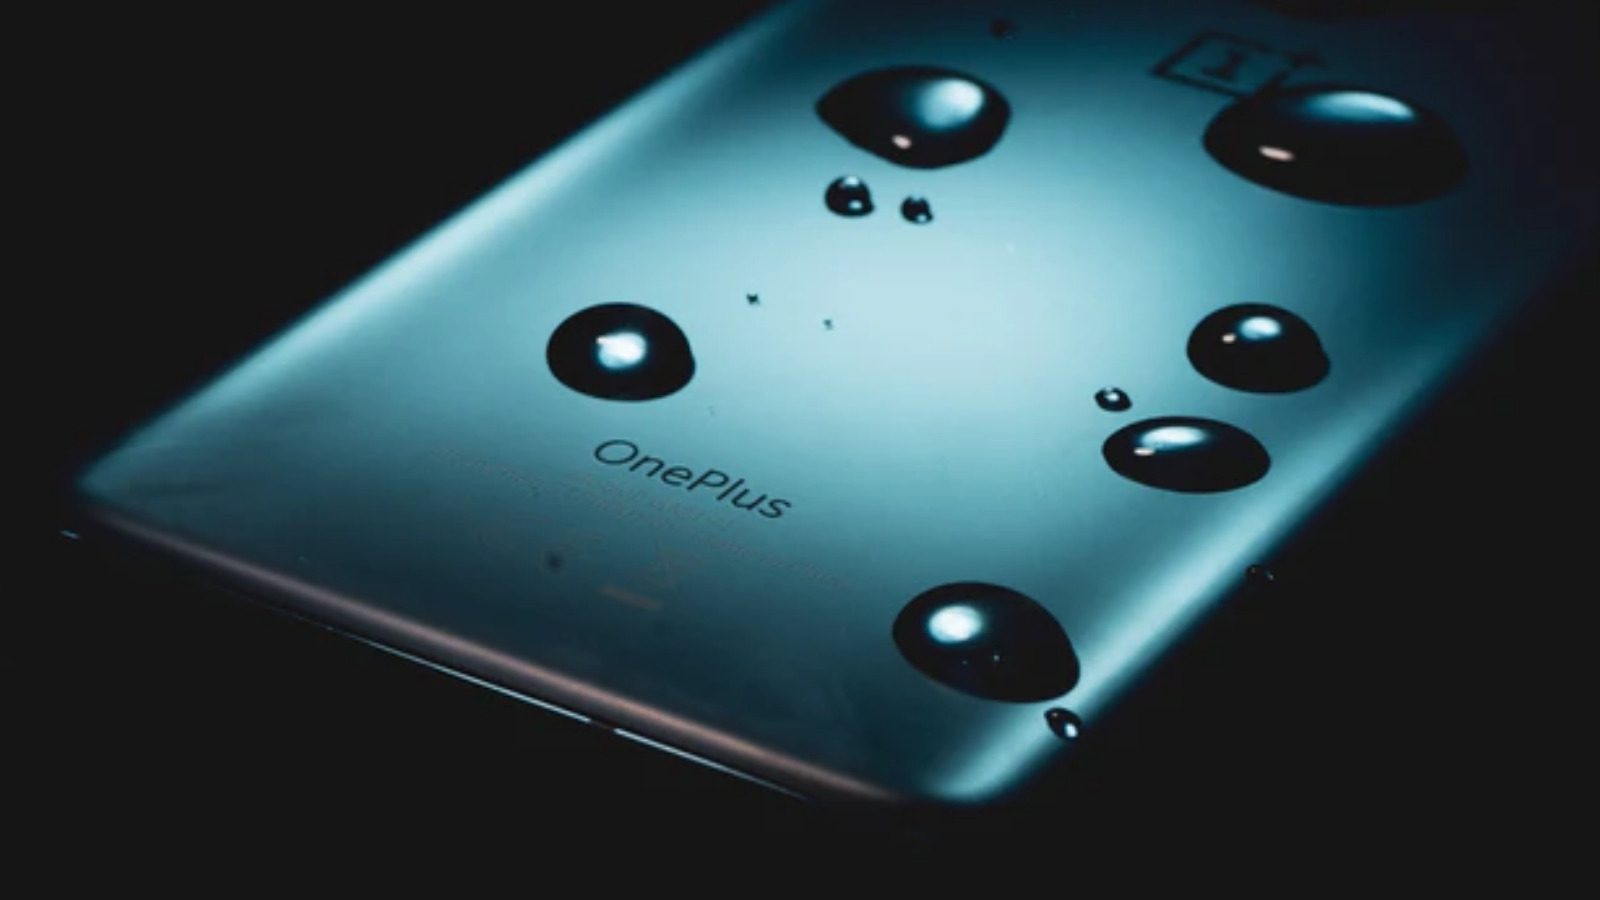 Oneplus признает, что применяет регулирование приложений для «улучшения» производительности устройства